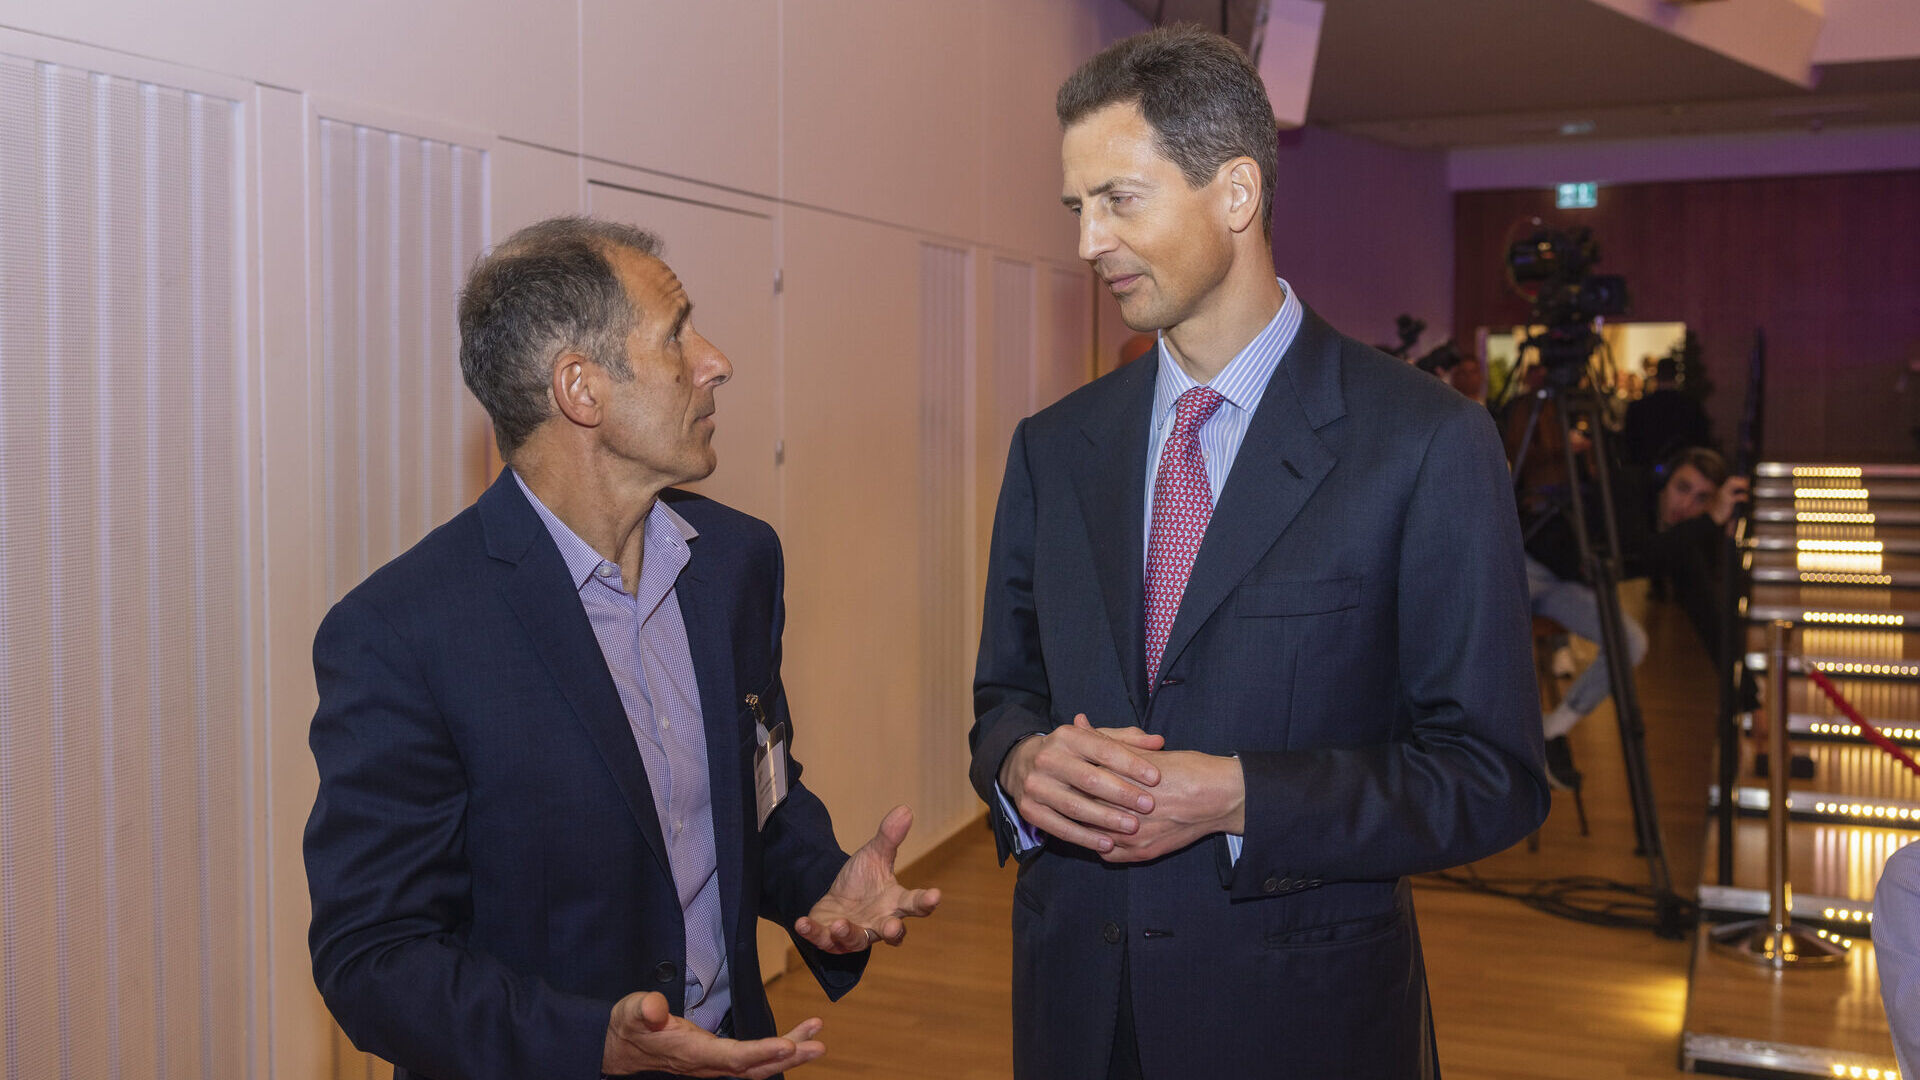 Digital Summit 2023: Alois von und zu Liechtenstein